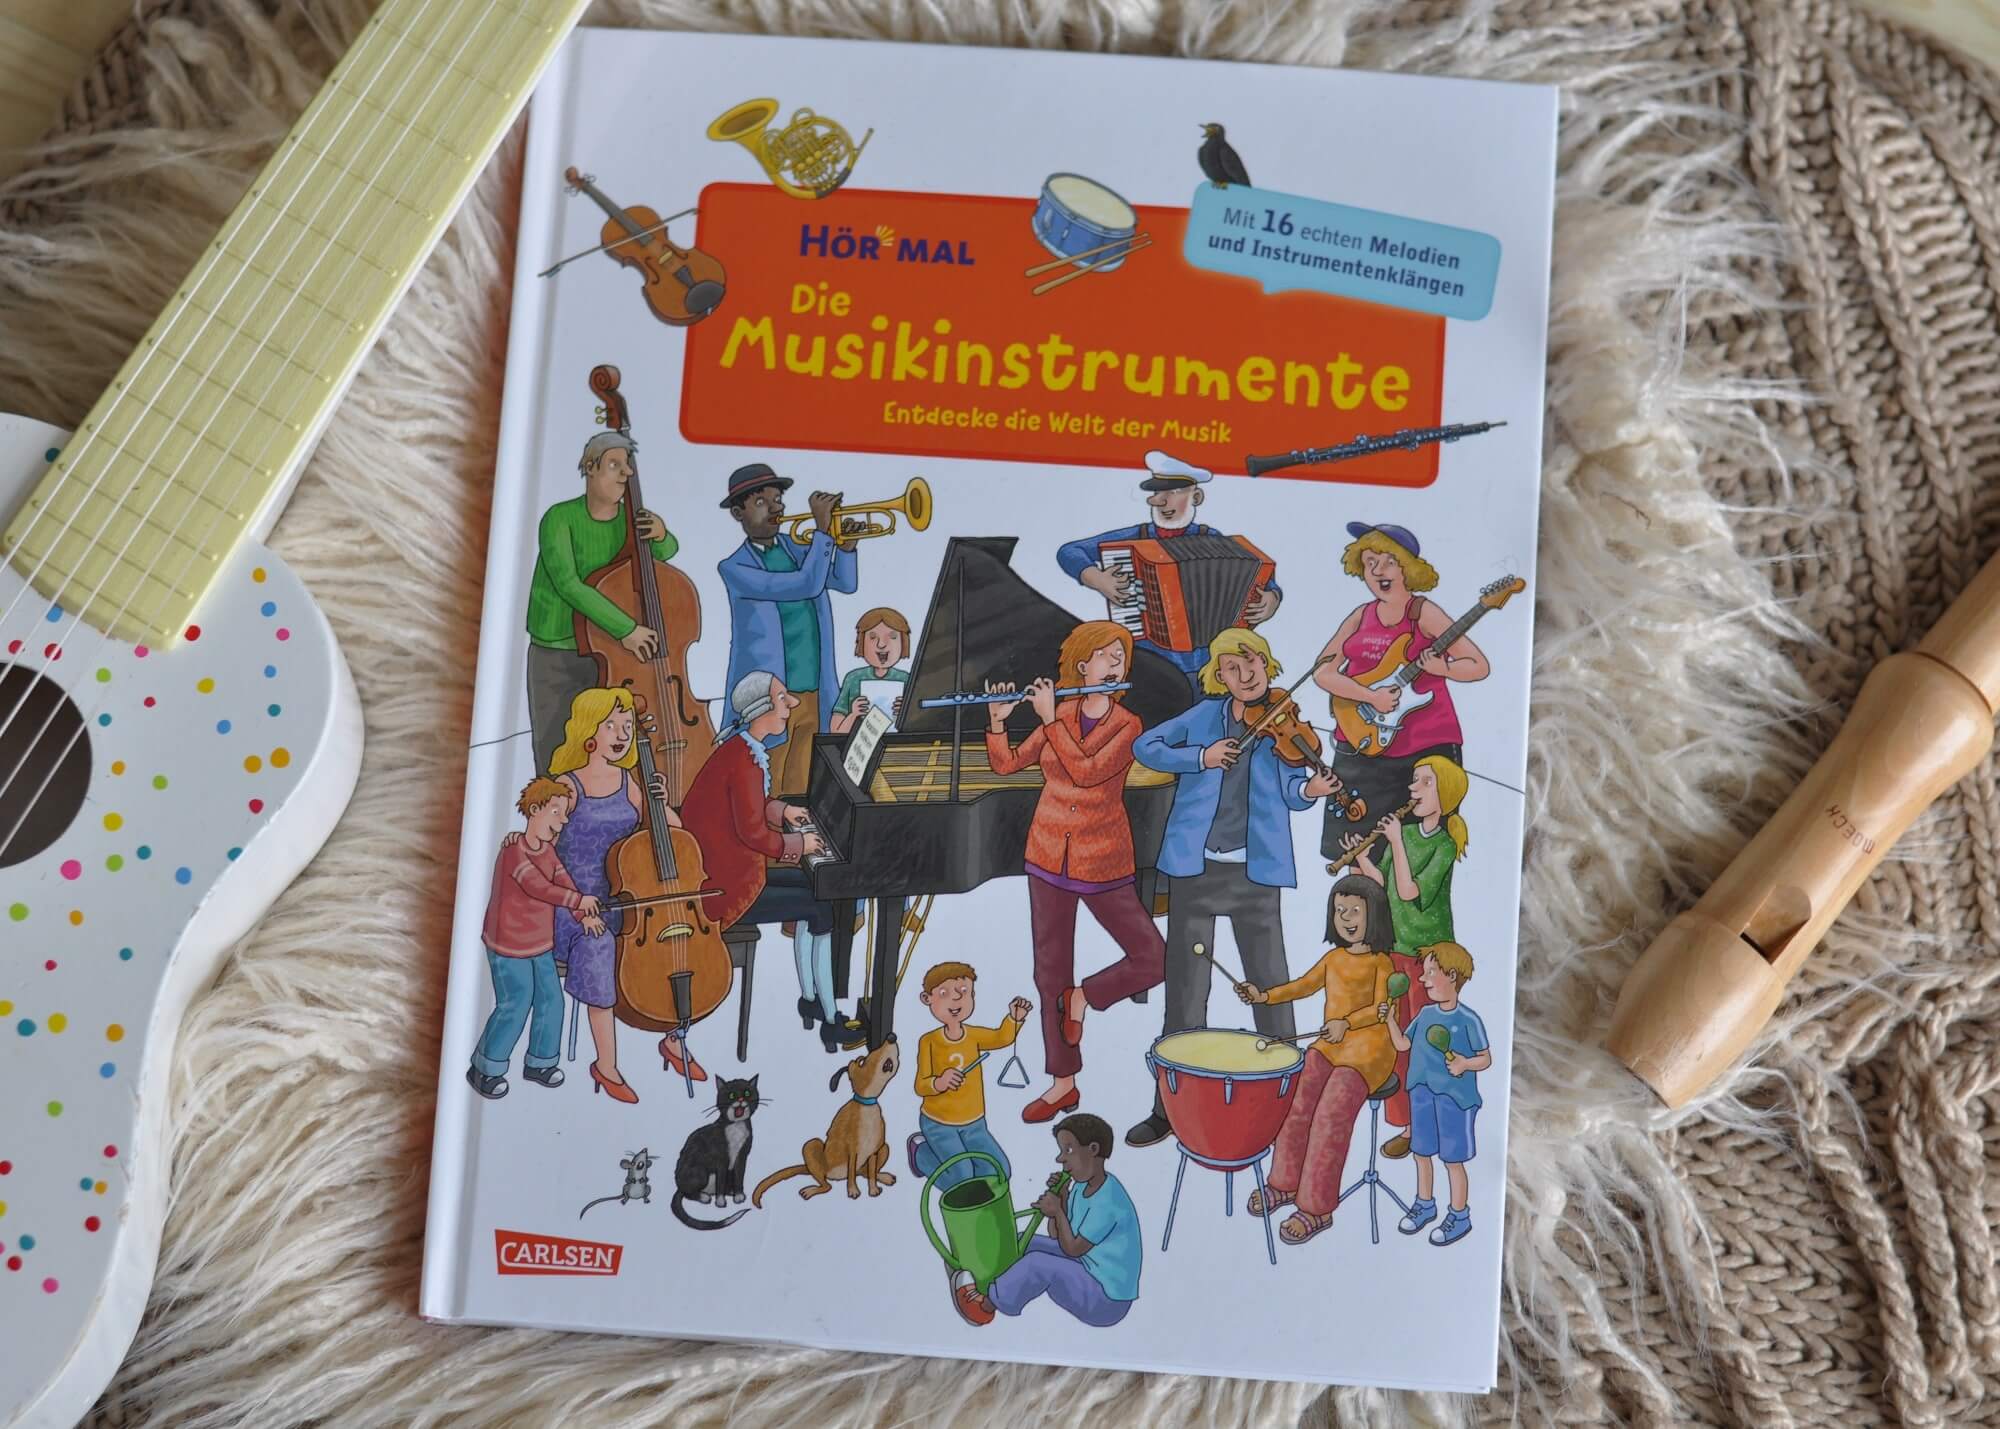 Spielerisch Musikinstrumente und Instrumentenfamilien kennen lernen und mit 16 Sounds ihren Klängen lauschen. Perfekt für musikalische Früherziehung oder die Grundschule. #musik #instrumente #buch #kinder #lernen #hören #sound #bilderbuch #sachbuch